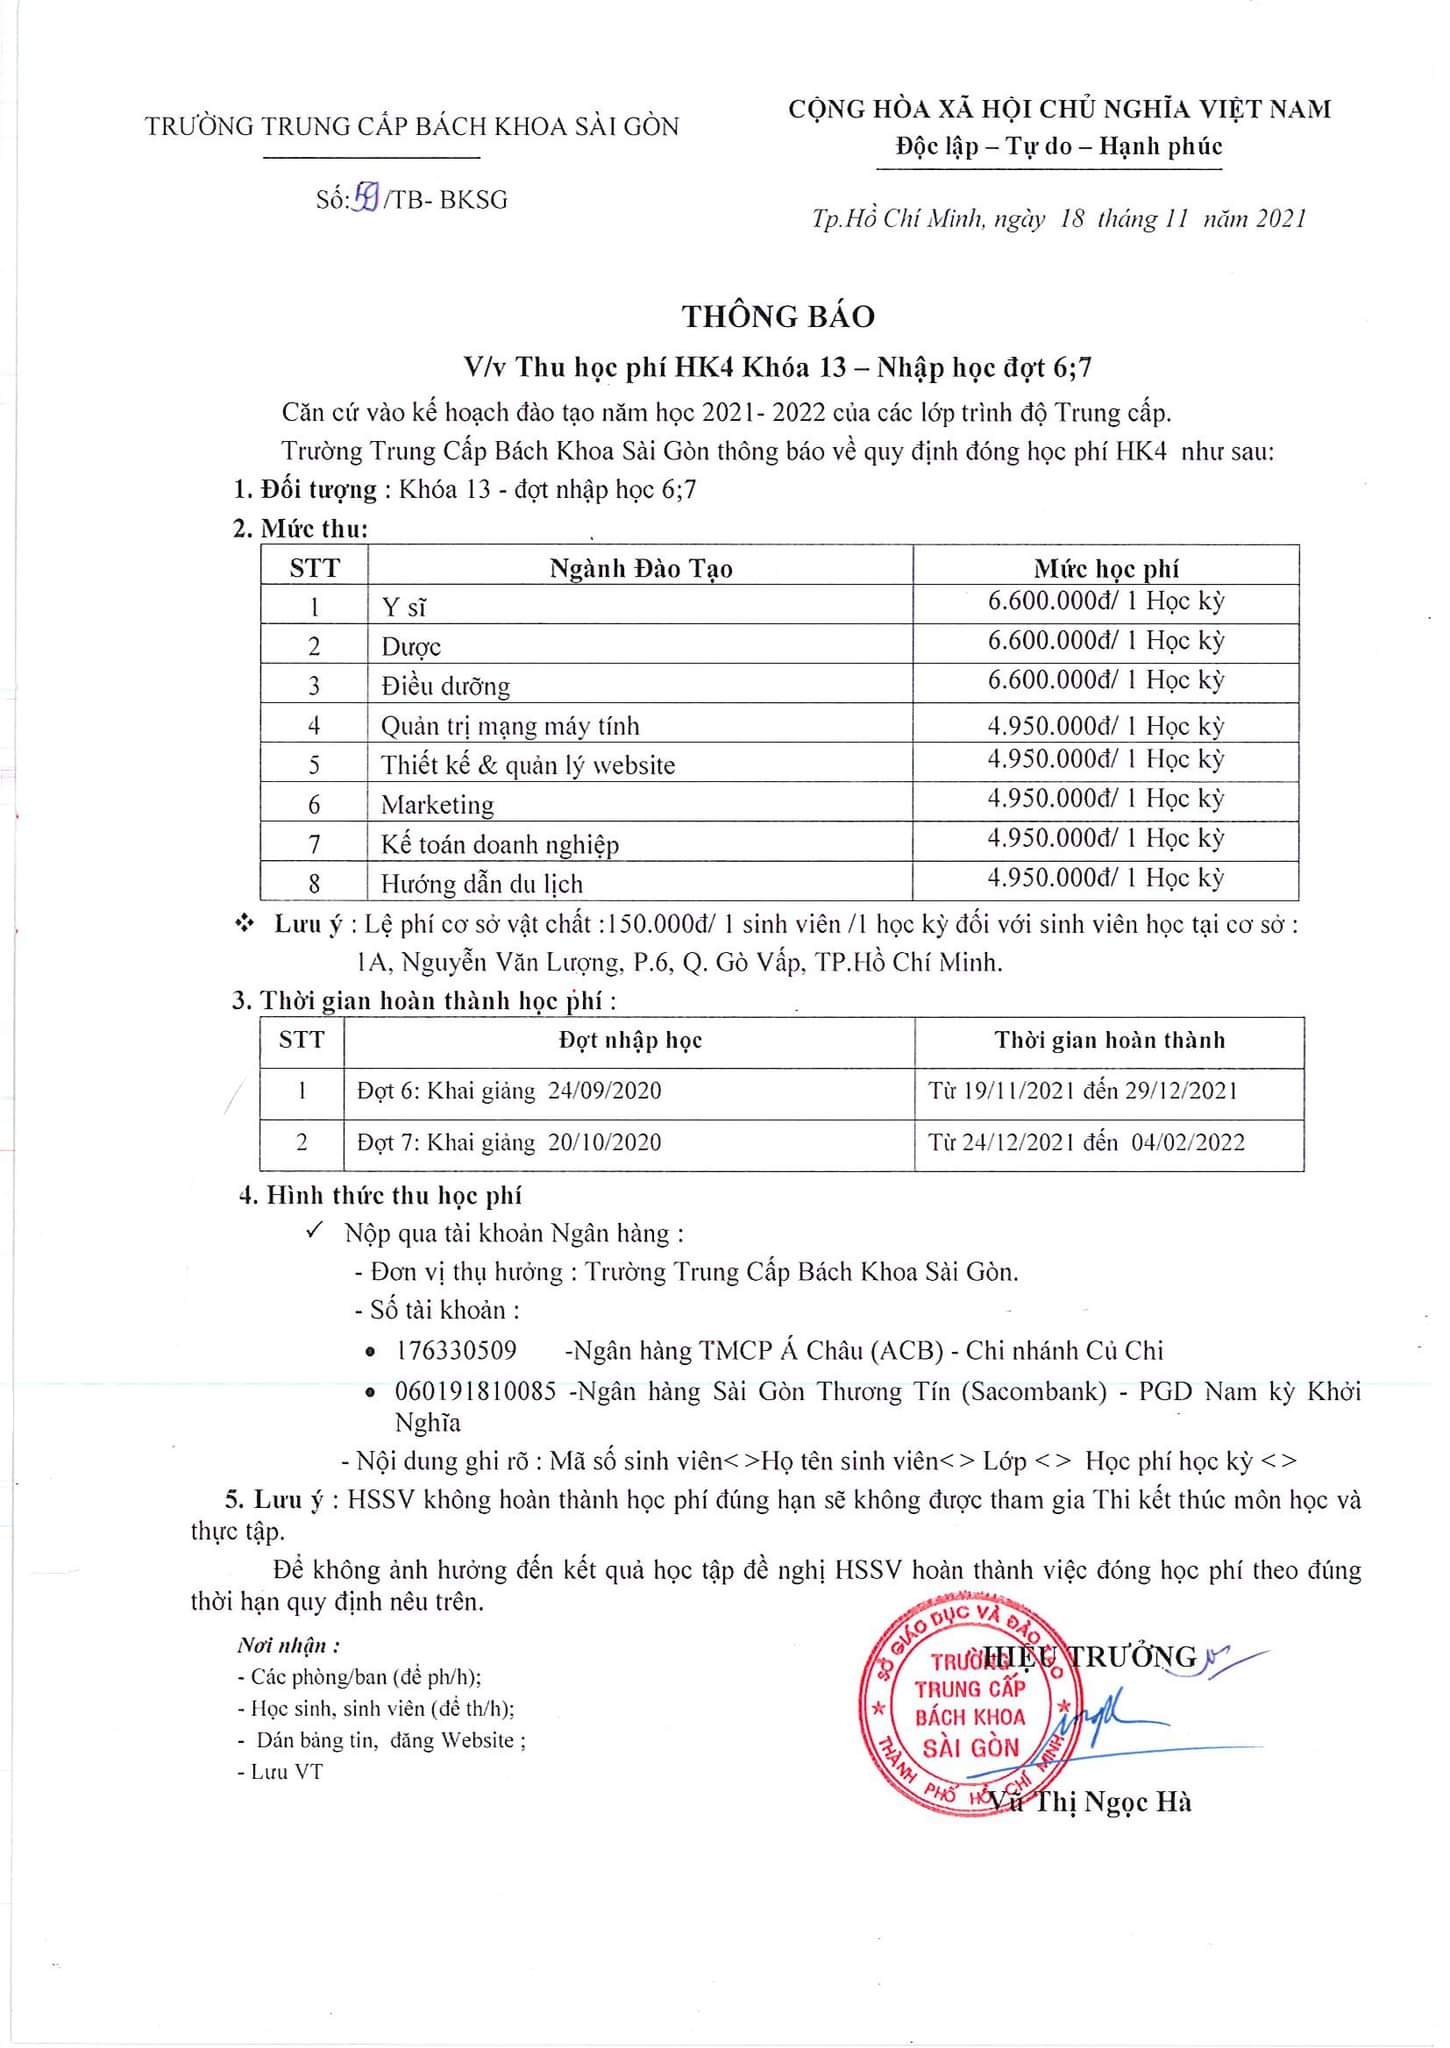 Thông báo học phí HK4 khóa 13 đợt nhập học 6,7